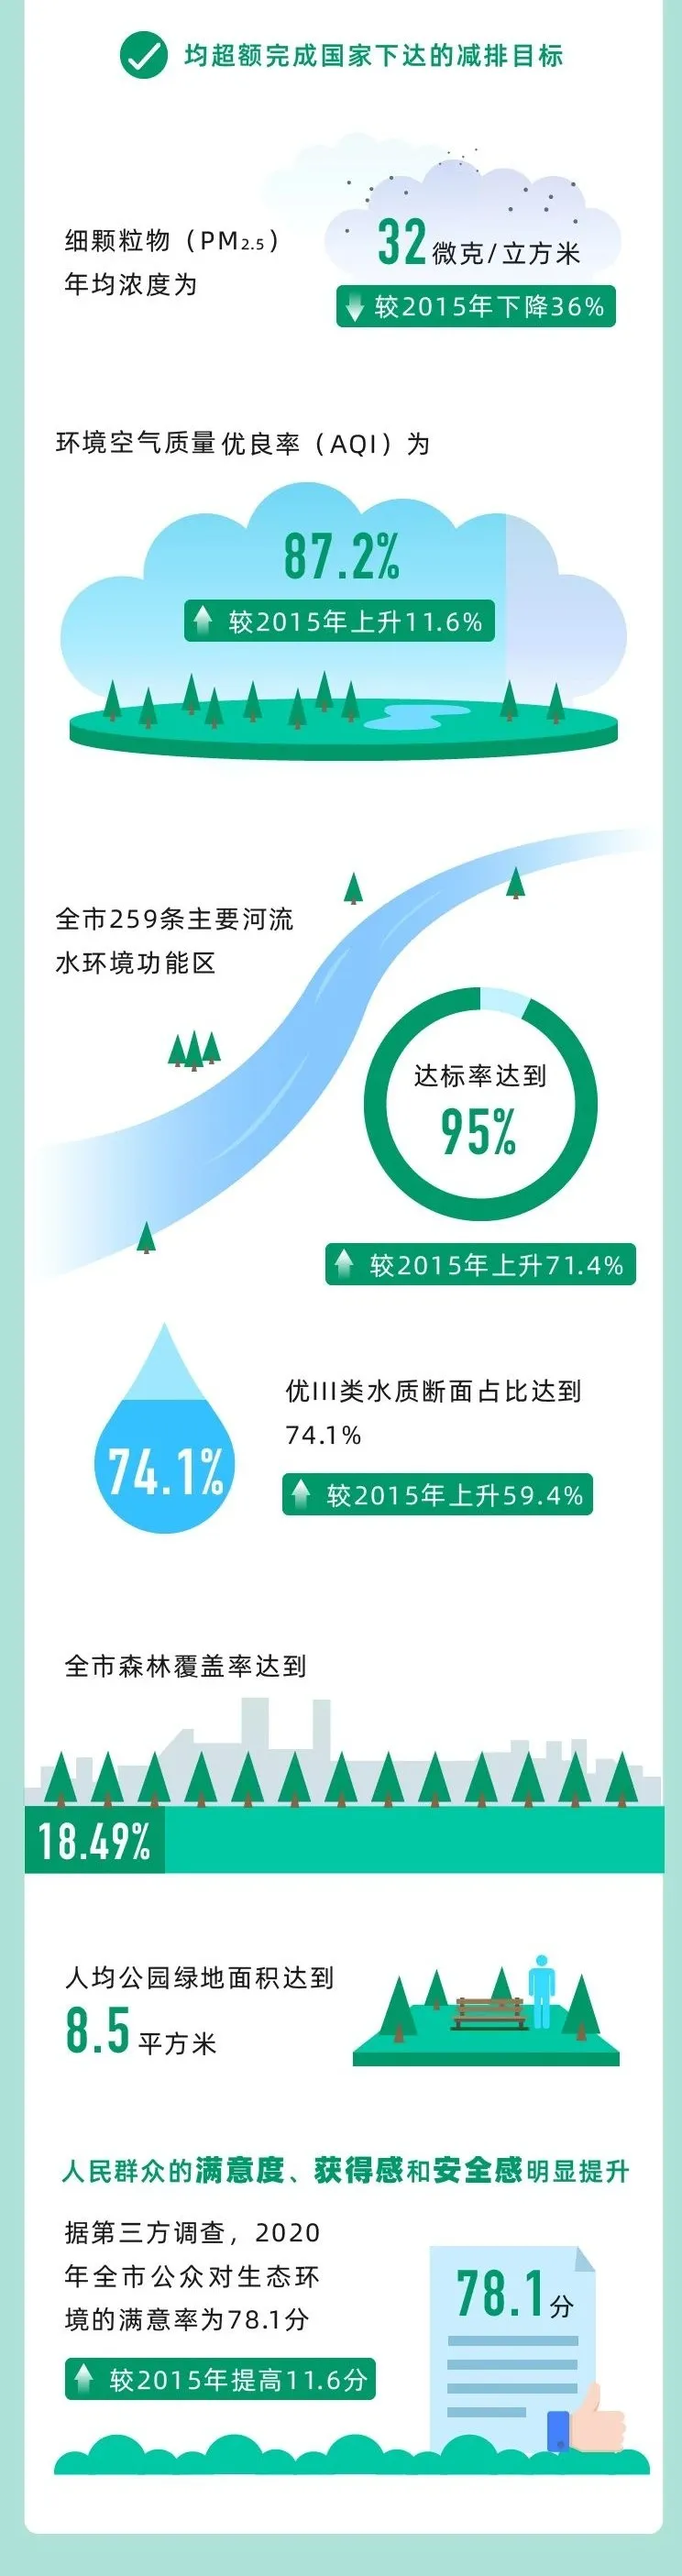 回顾“十三五”，展望“十四五” 上海绿色发展之路将这样走 行业热点 第2张